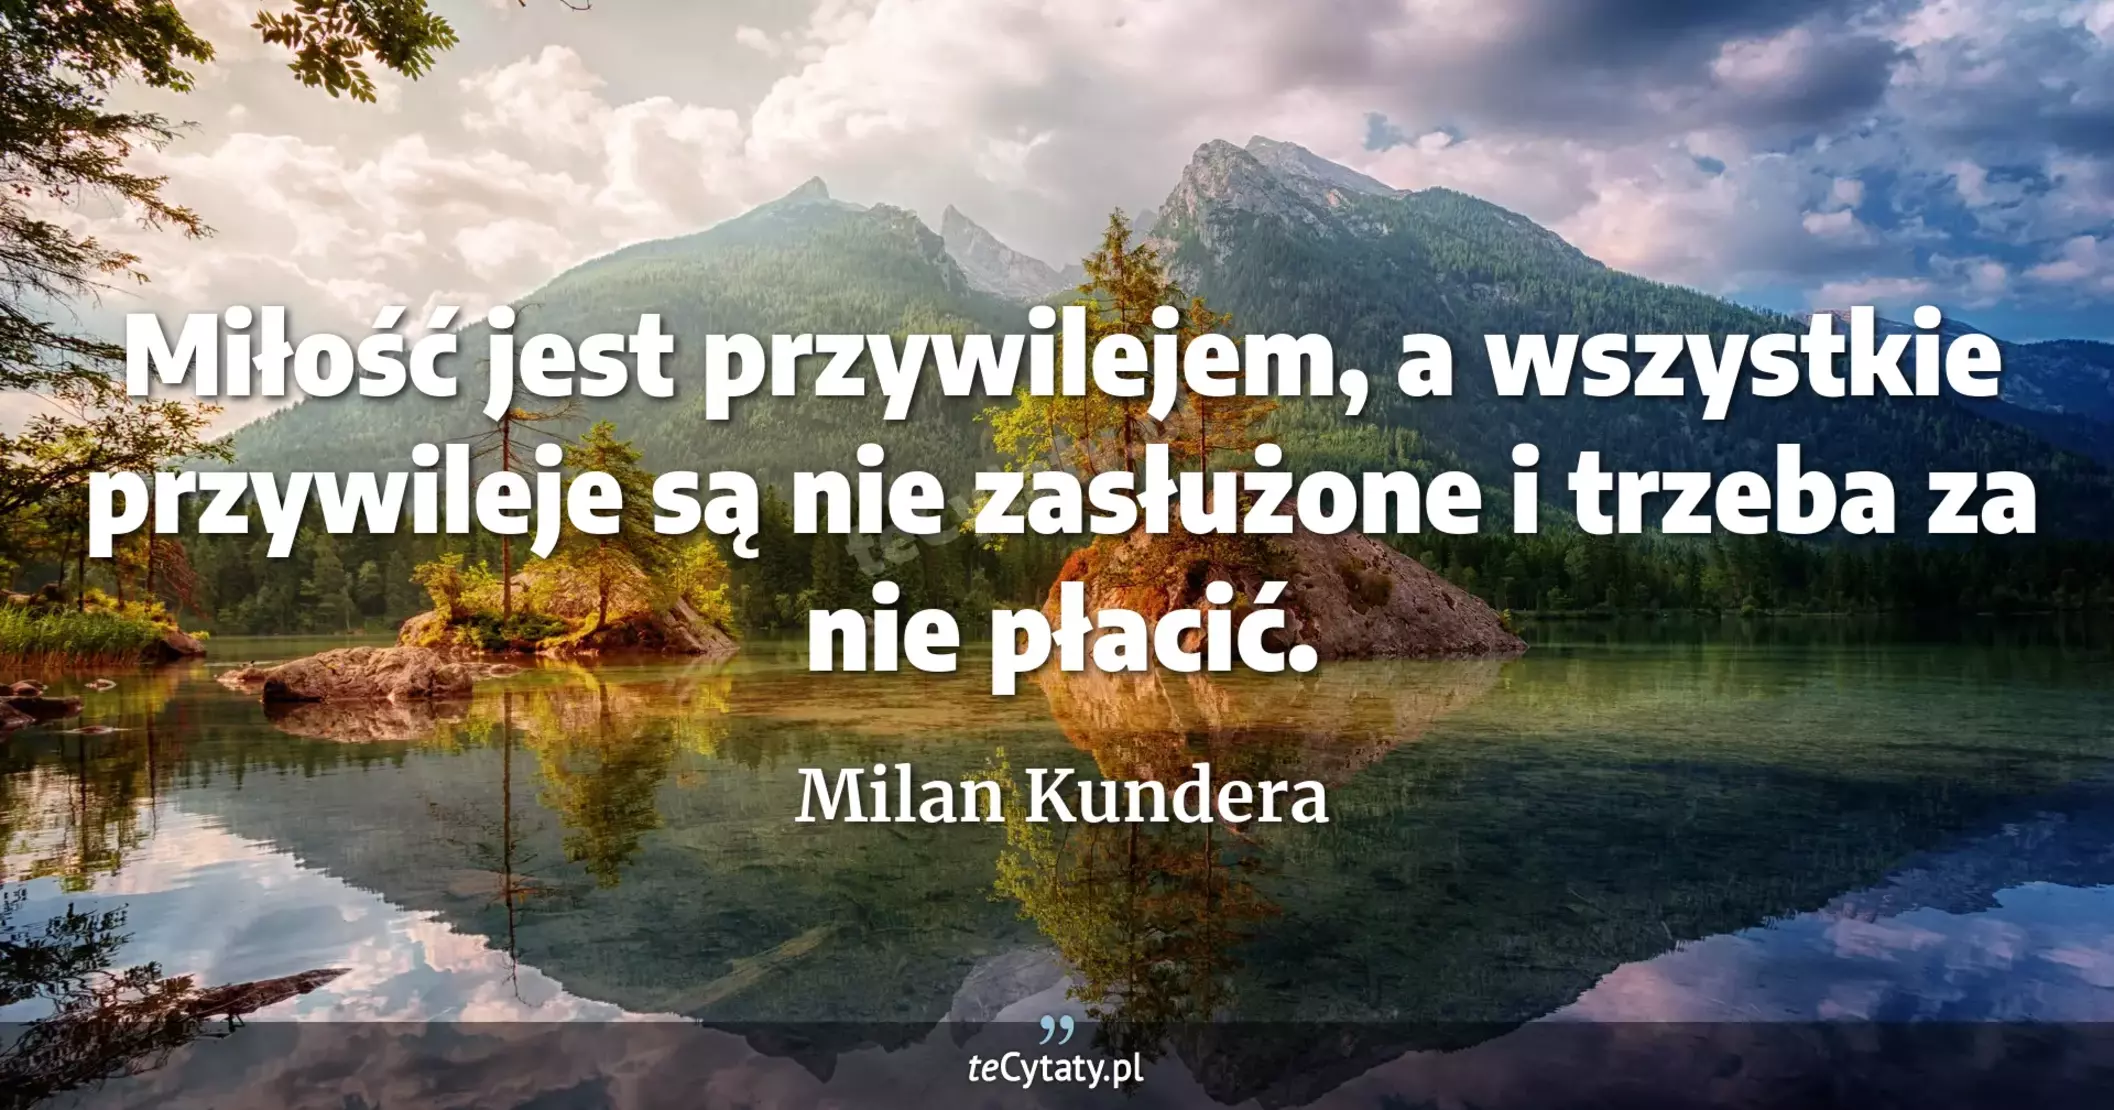 Miłość jest przywilejem, a wszystkie przywileje są nie zasłużone i trzeba za nie płacić. - Milan Kundera